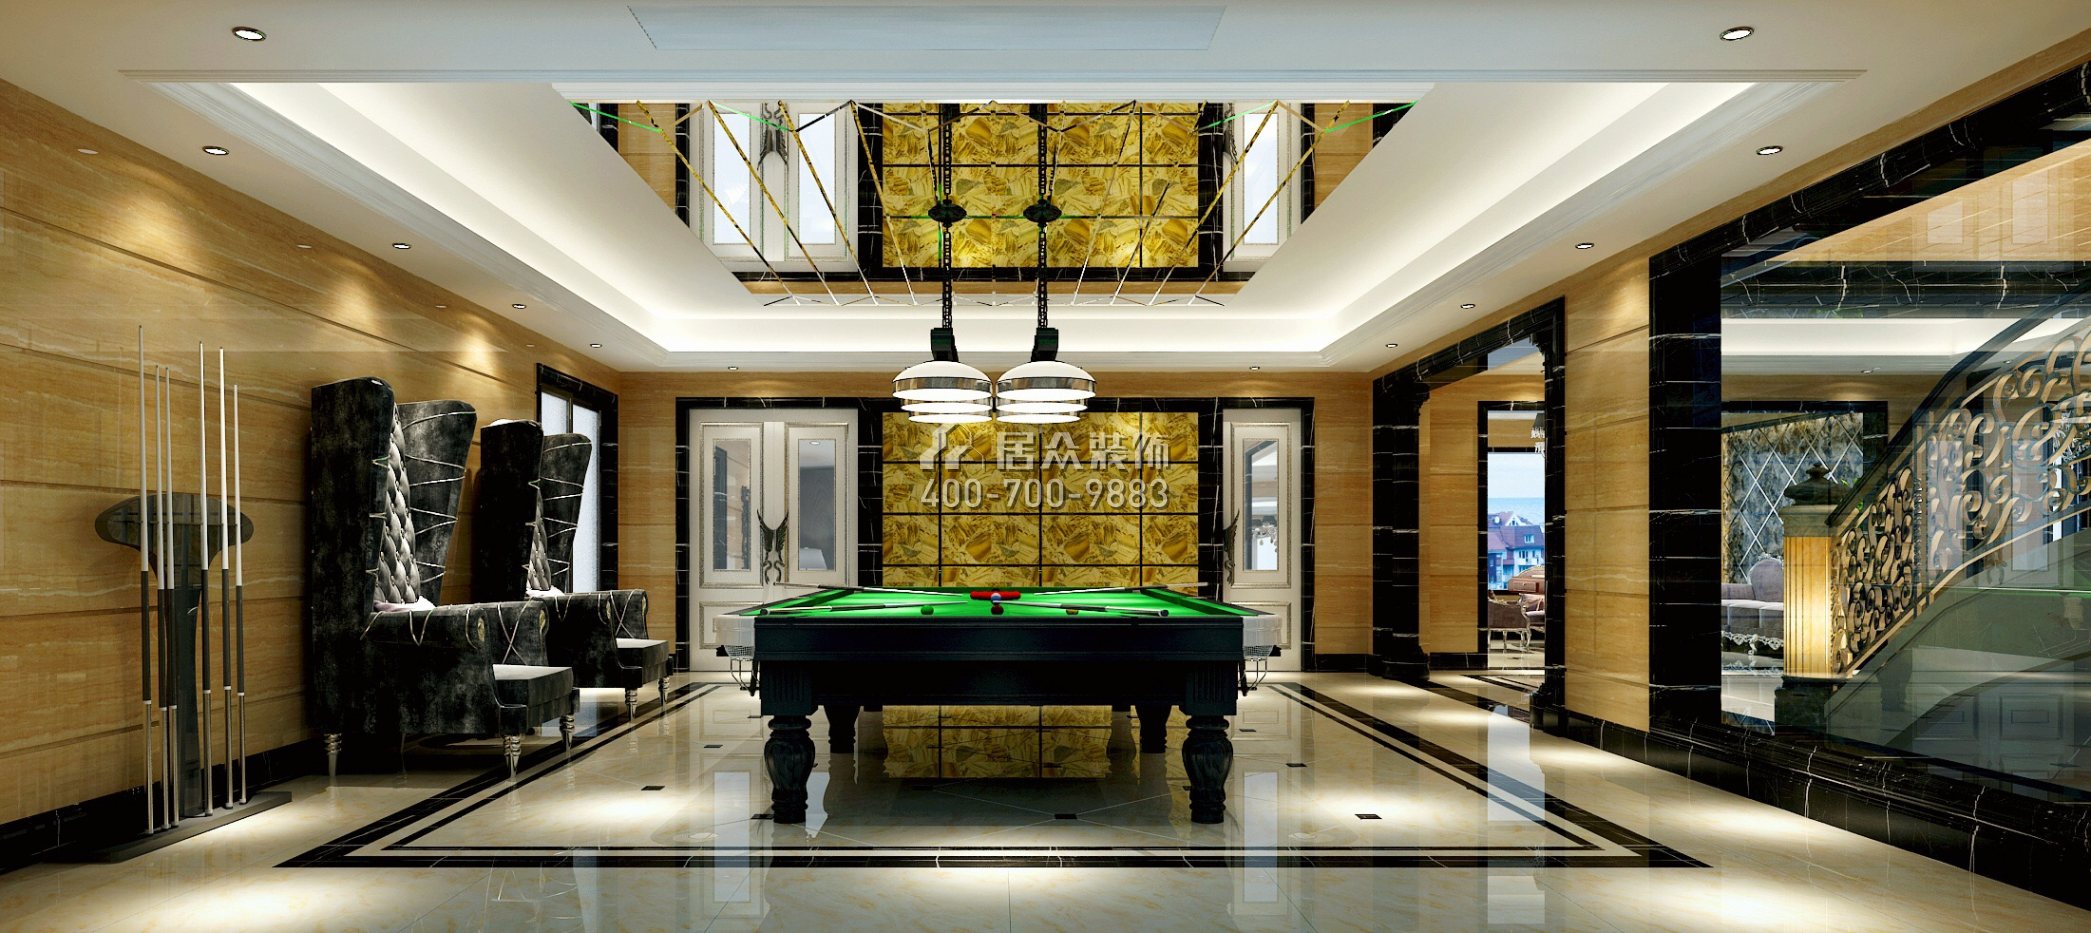 南航碧花園563平方米新古典風格別墅戶型娛樂室裝修效果圖